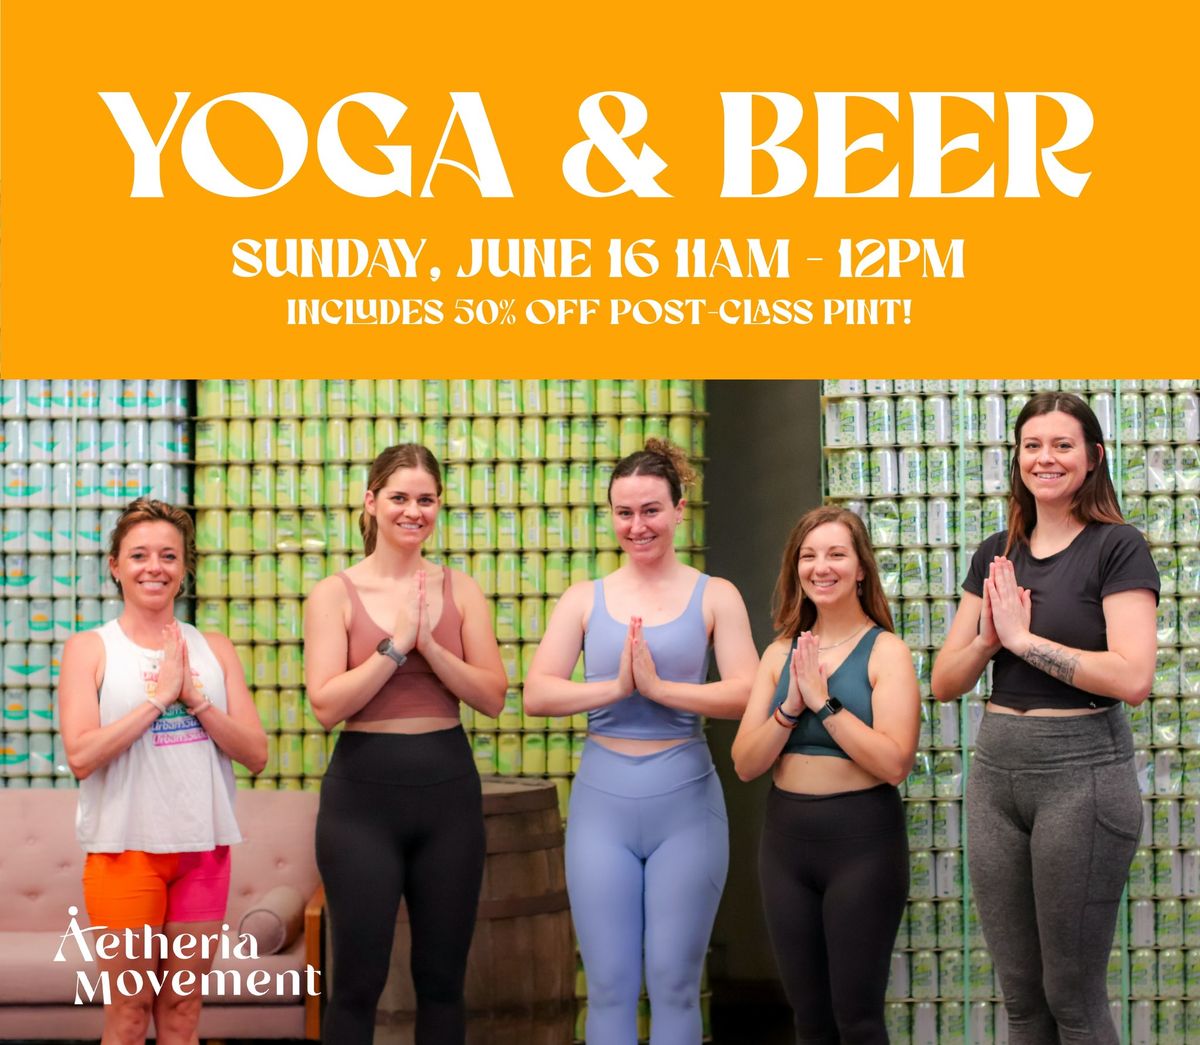 Yoga & Beer at Urban South!